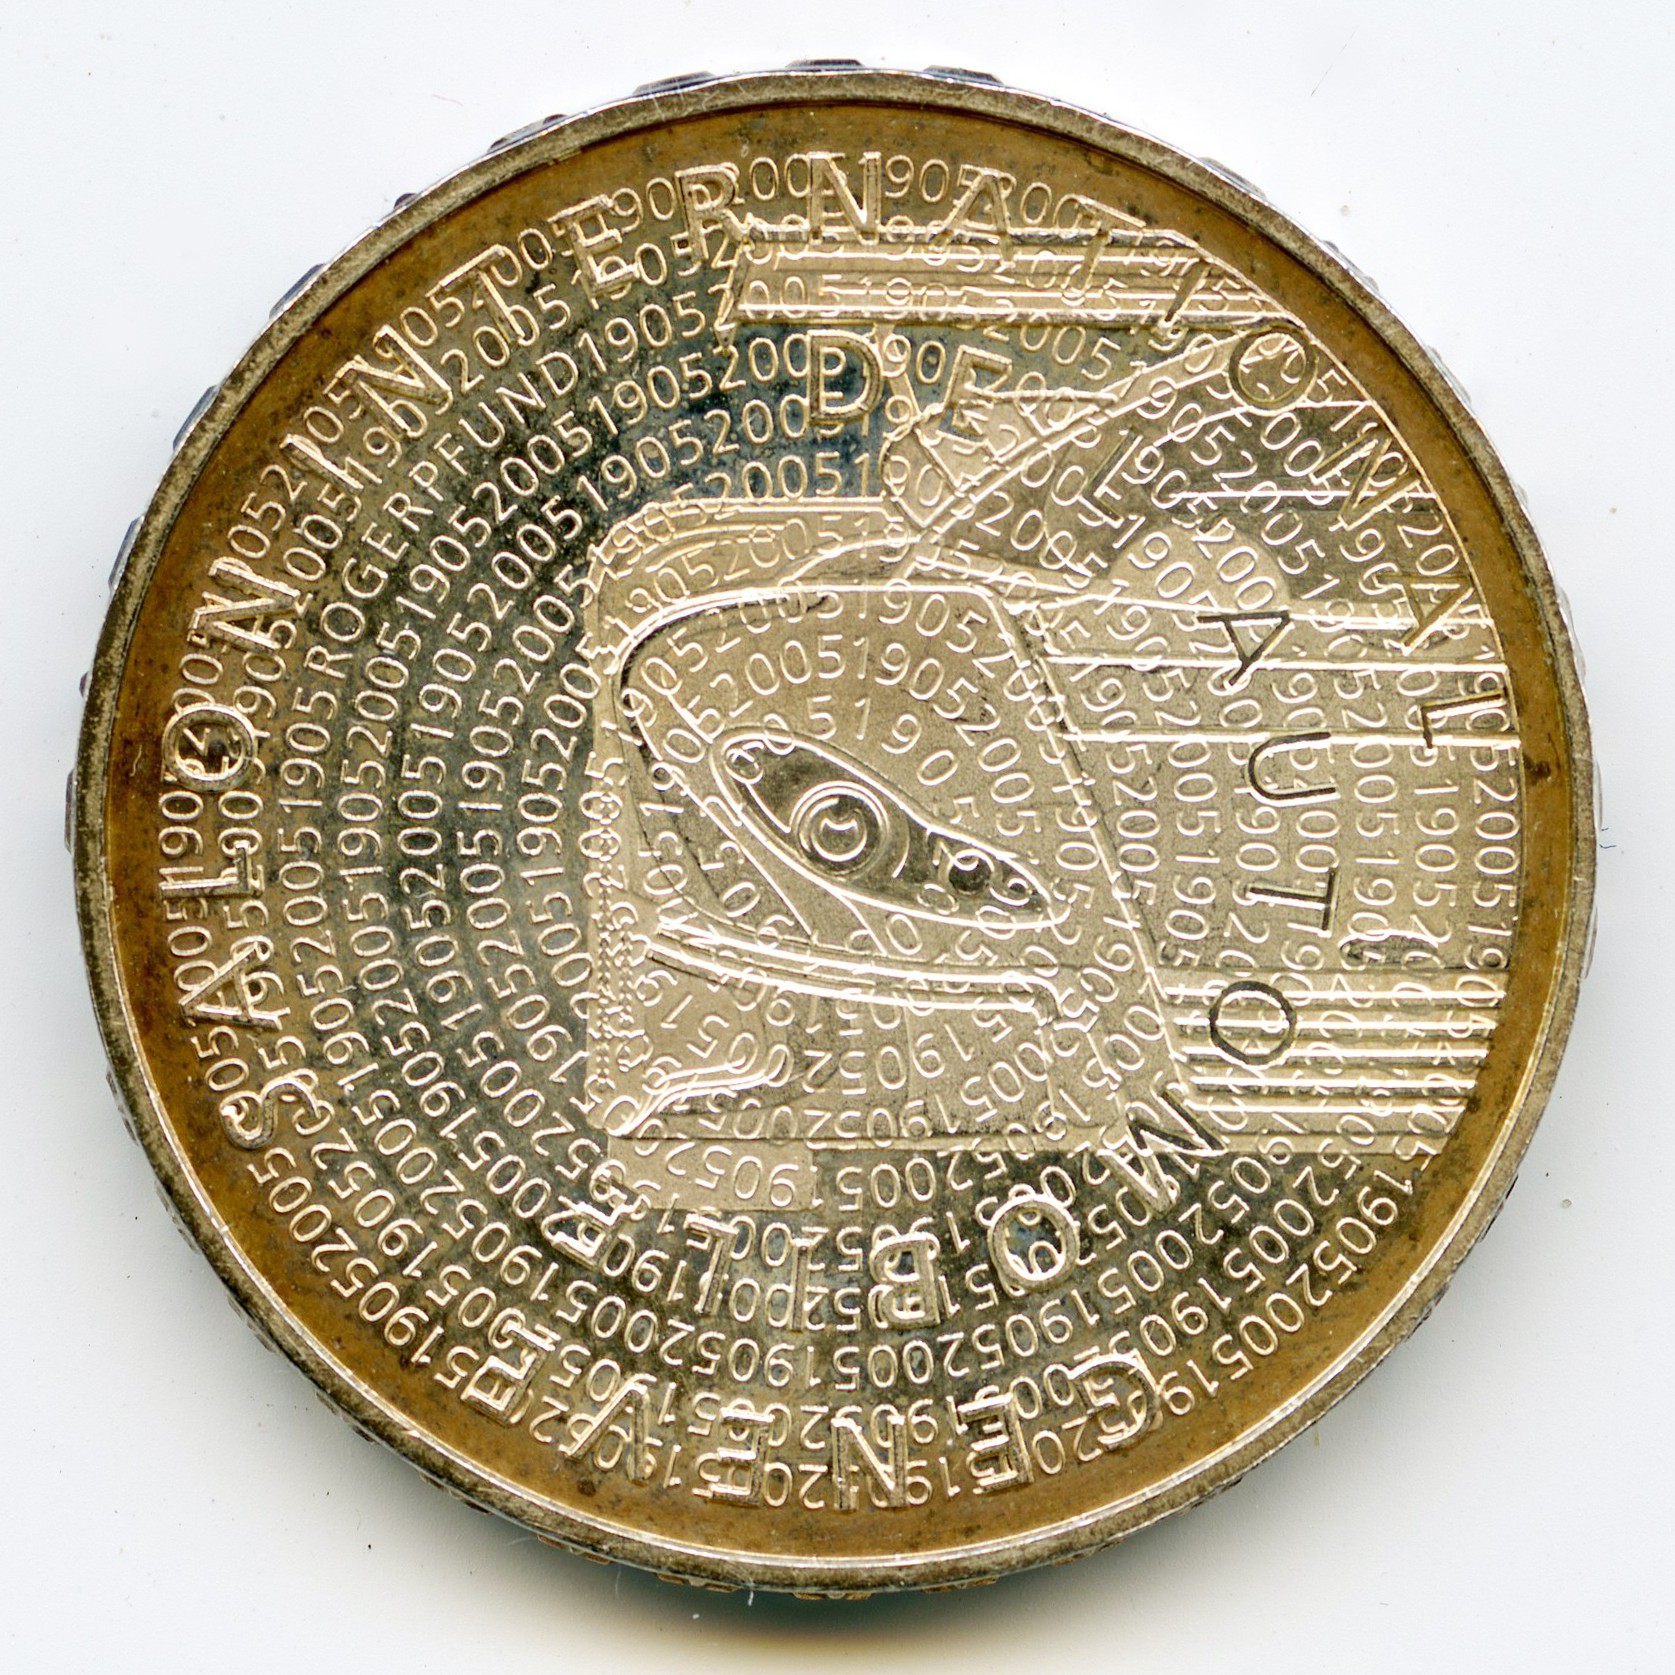 Suisse - 20 Francs - 2005 B avers